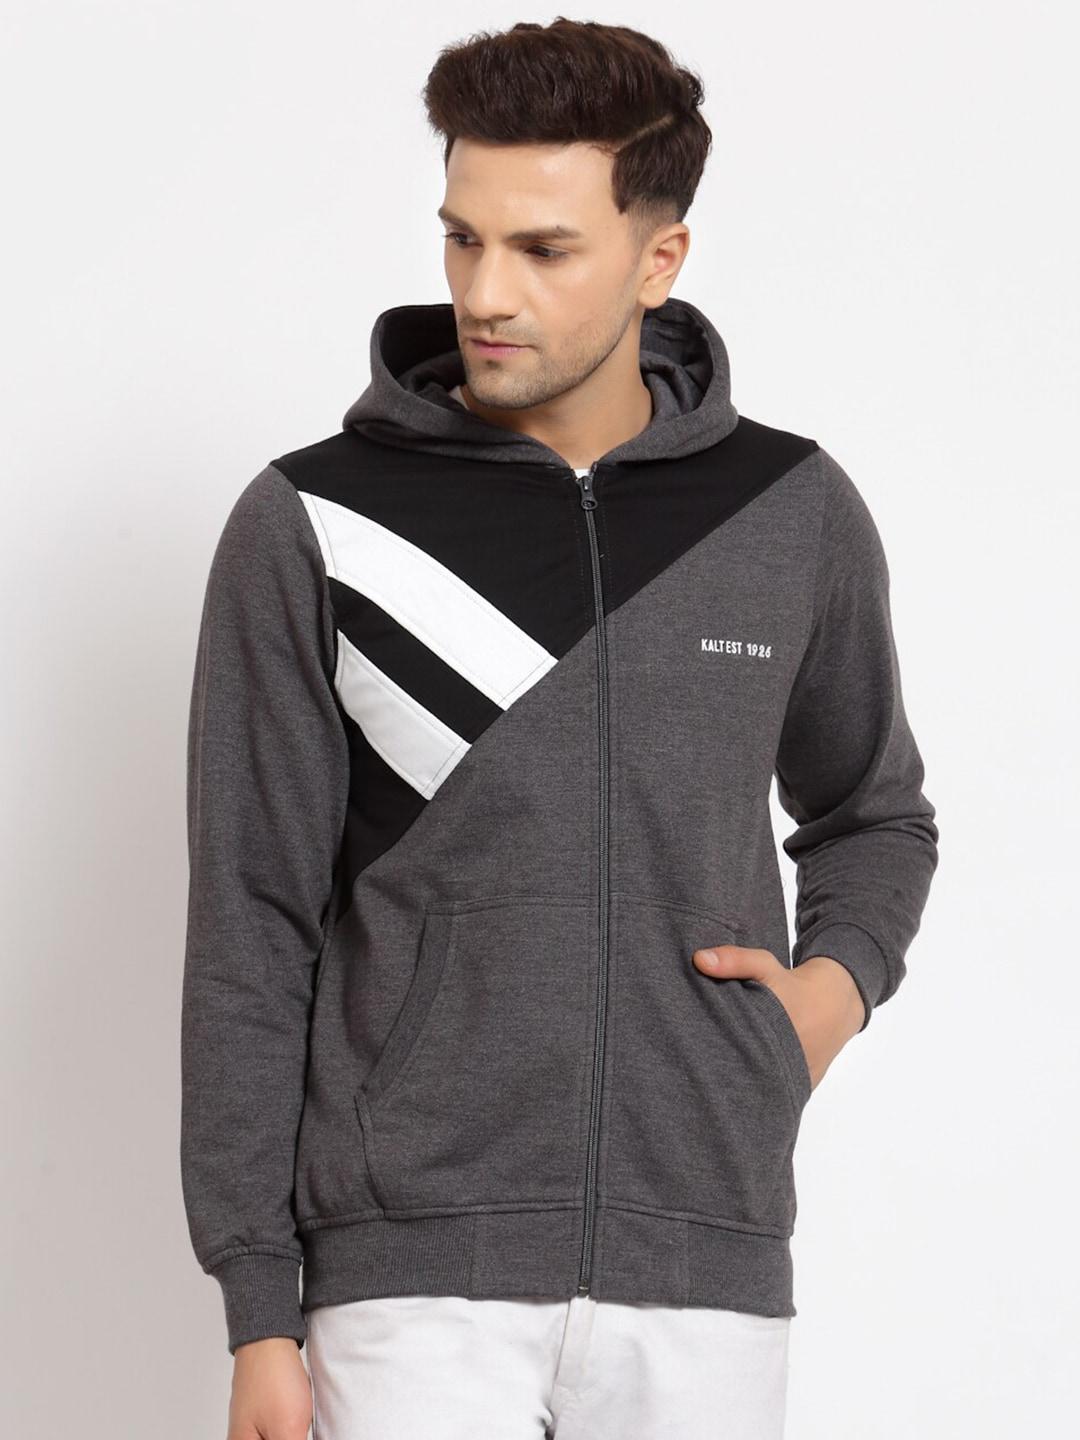 kalt-men-full-sleeves-zipper-fleece-colour-block-hoodie-grey-hoodie